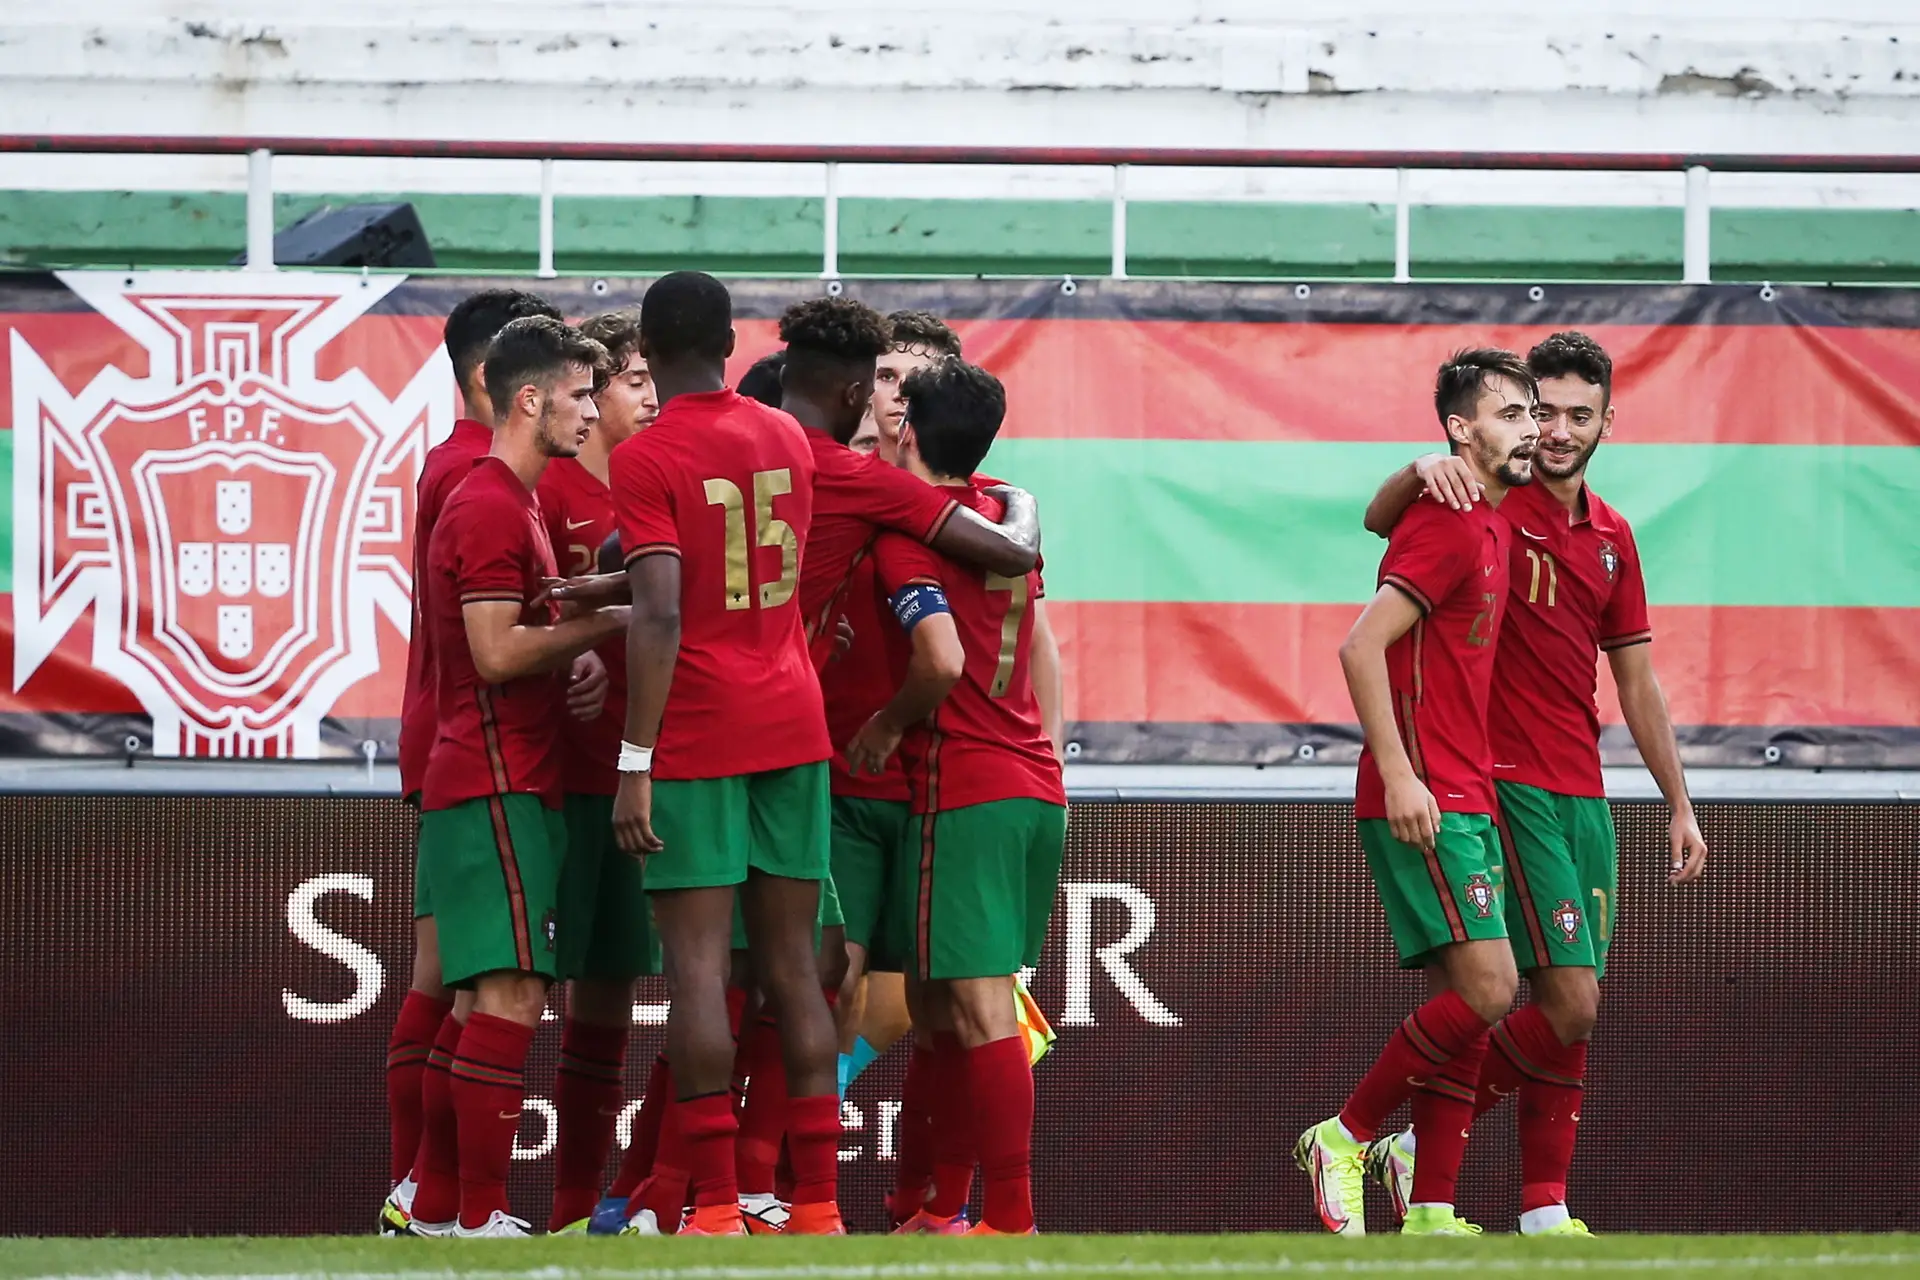 Portugal sub-21 vence na Bielorrússia no apuramento para o Euro